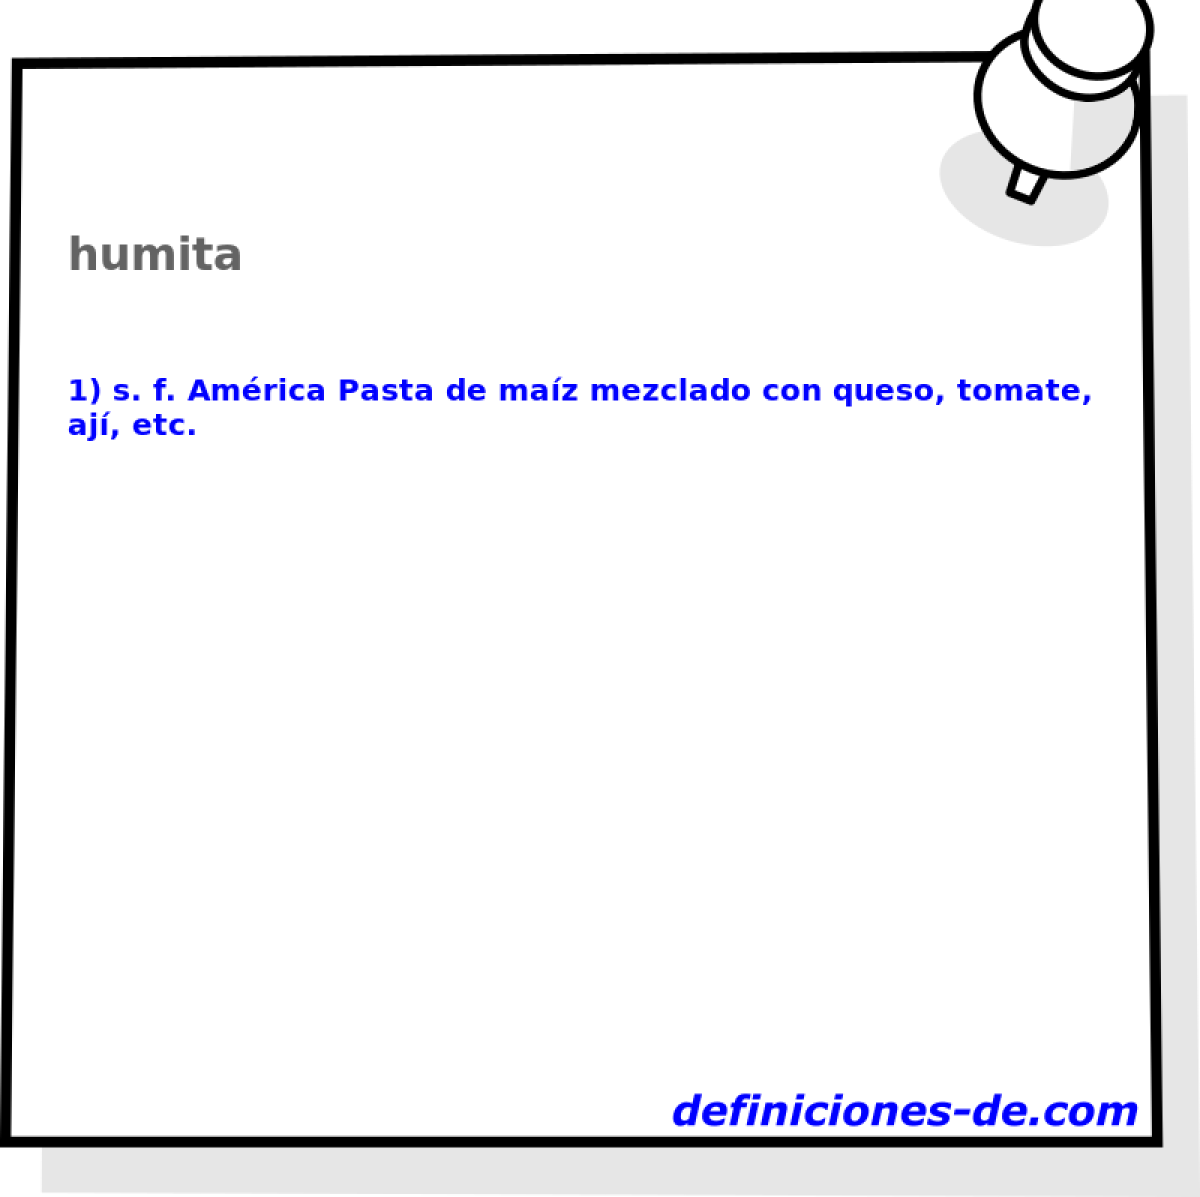 humita 